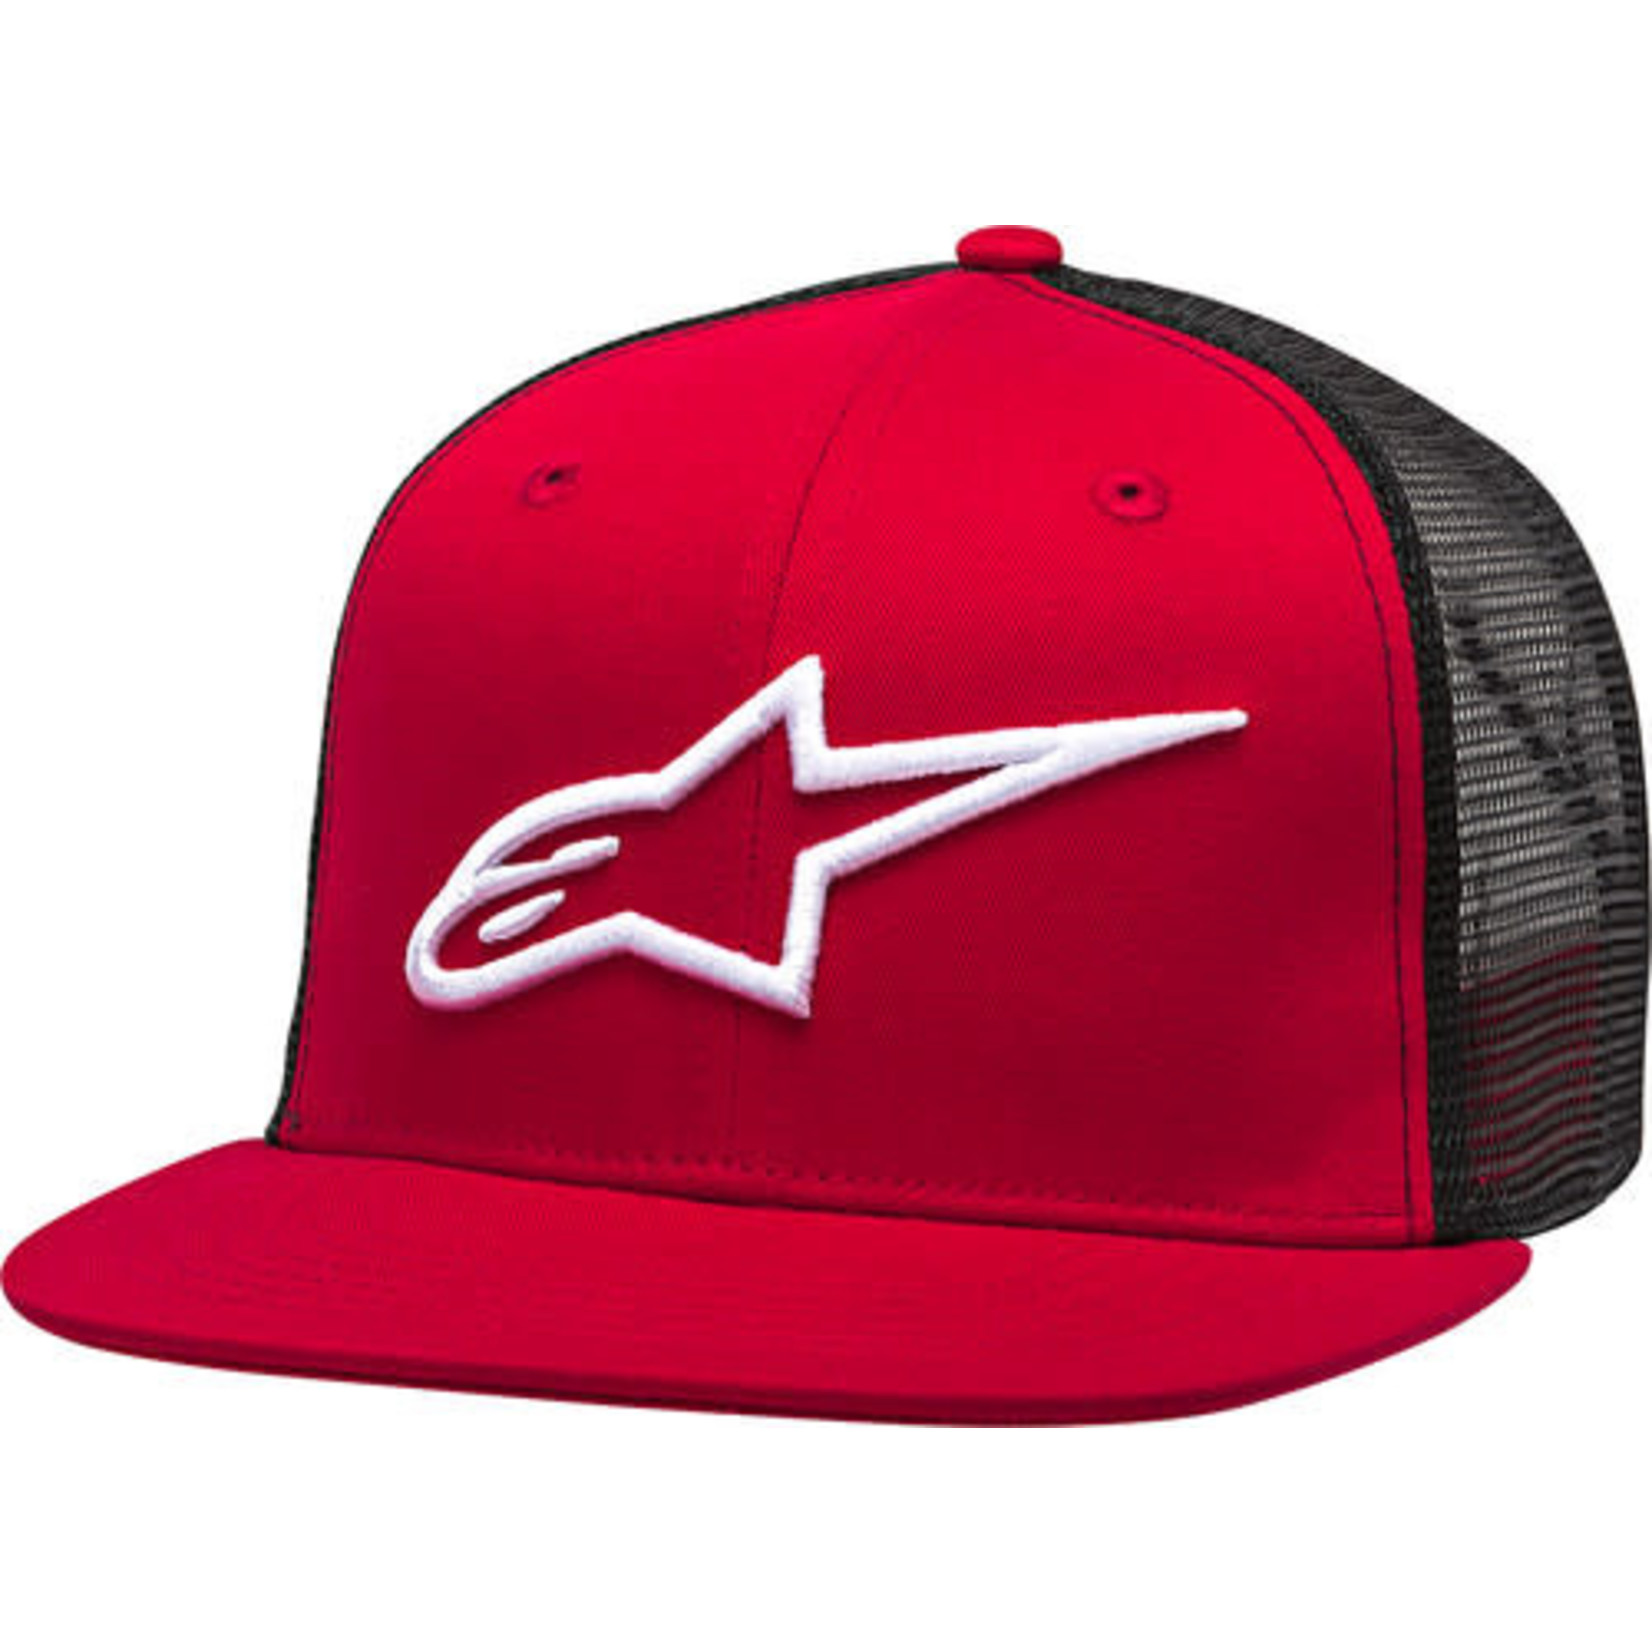 ALPINESTARS COPR TRUCKER HAT RED/BLACK FLAT BILL